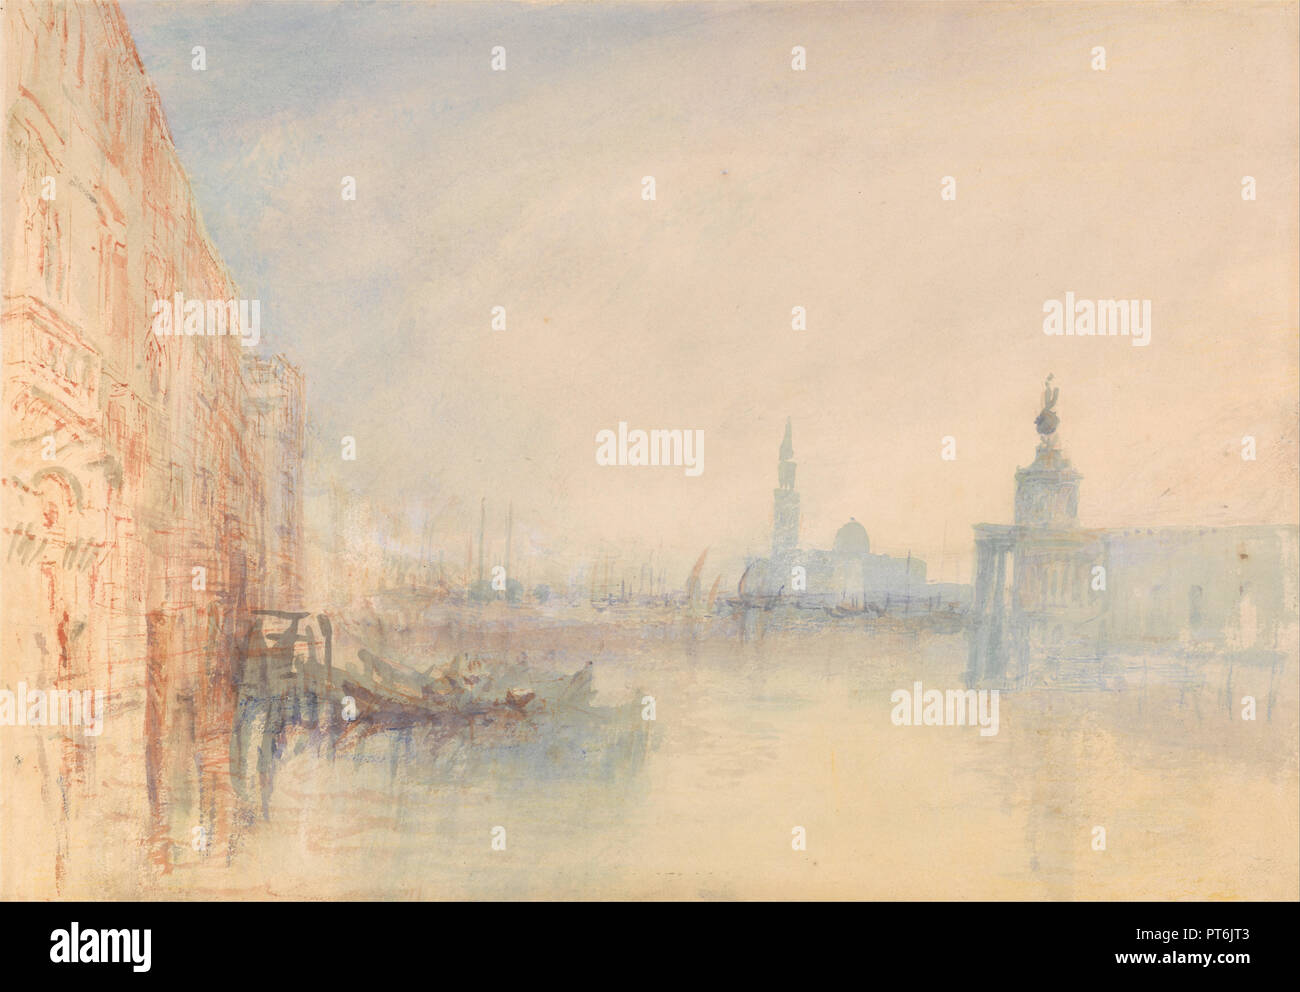 Venise, l'embouchure du Grand Canal. Date/Période : Ca. 1840. La peinture. L'aquarelle. Hauteur : 222 mm (8,74 in) ; Largeur : 318 mm (12.51 in). Auteur : J. M. W. Turner. Banque D'Images